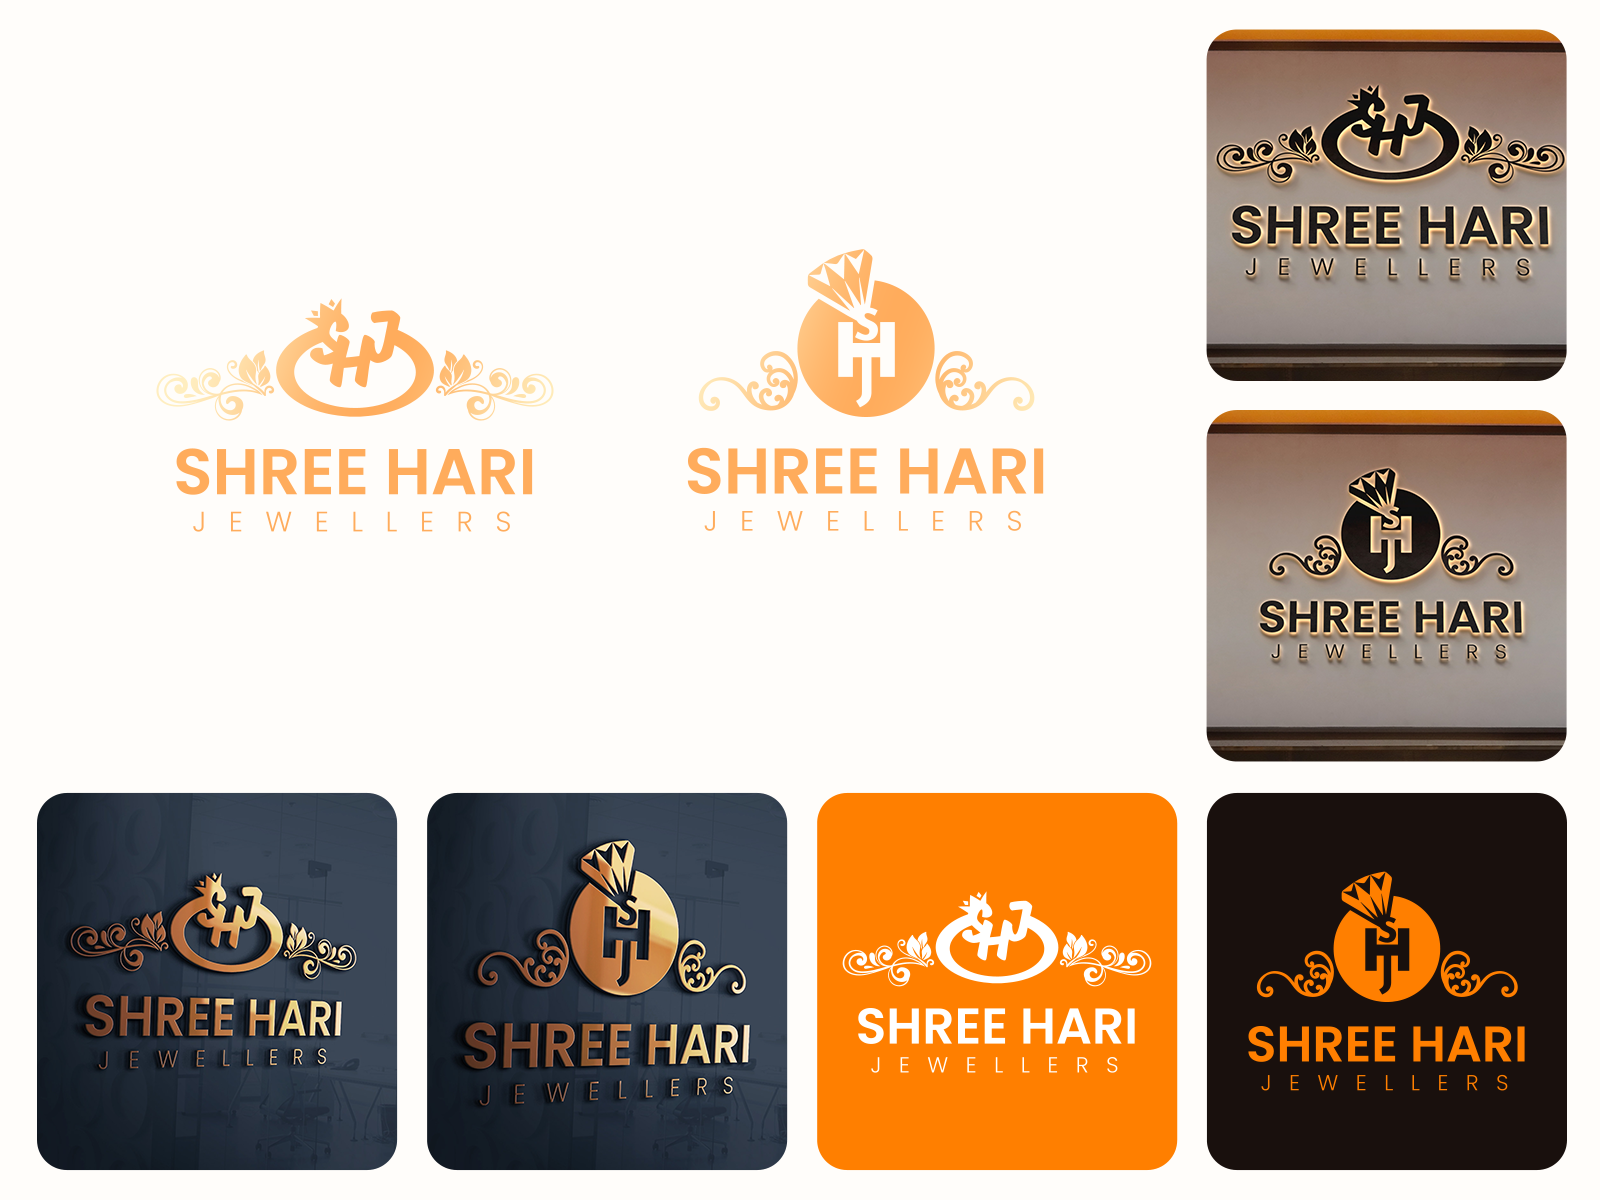 Shree Hari Oil Mill | LinkedIn